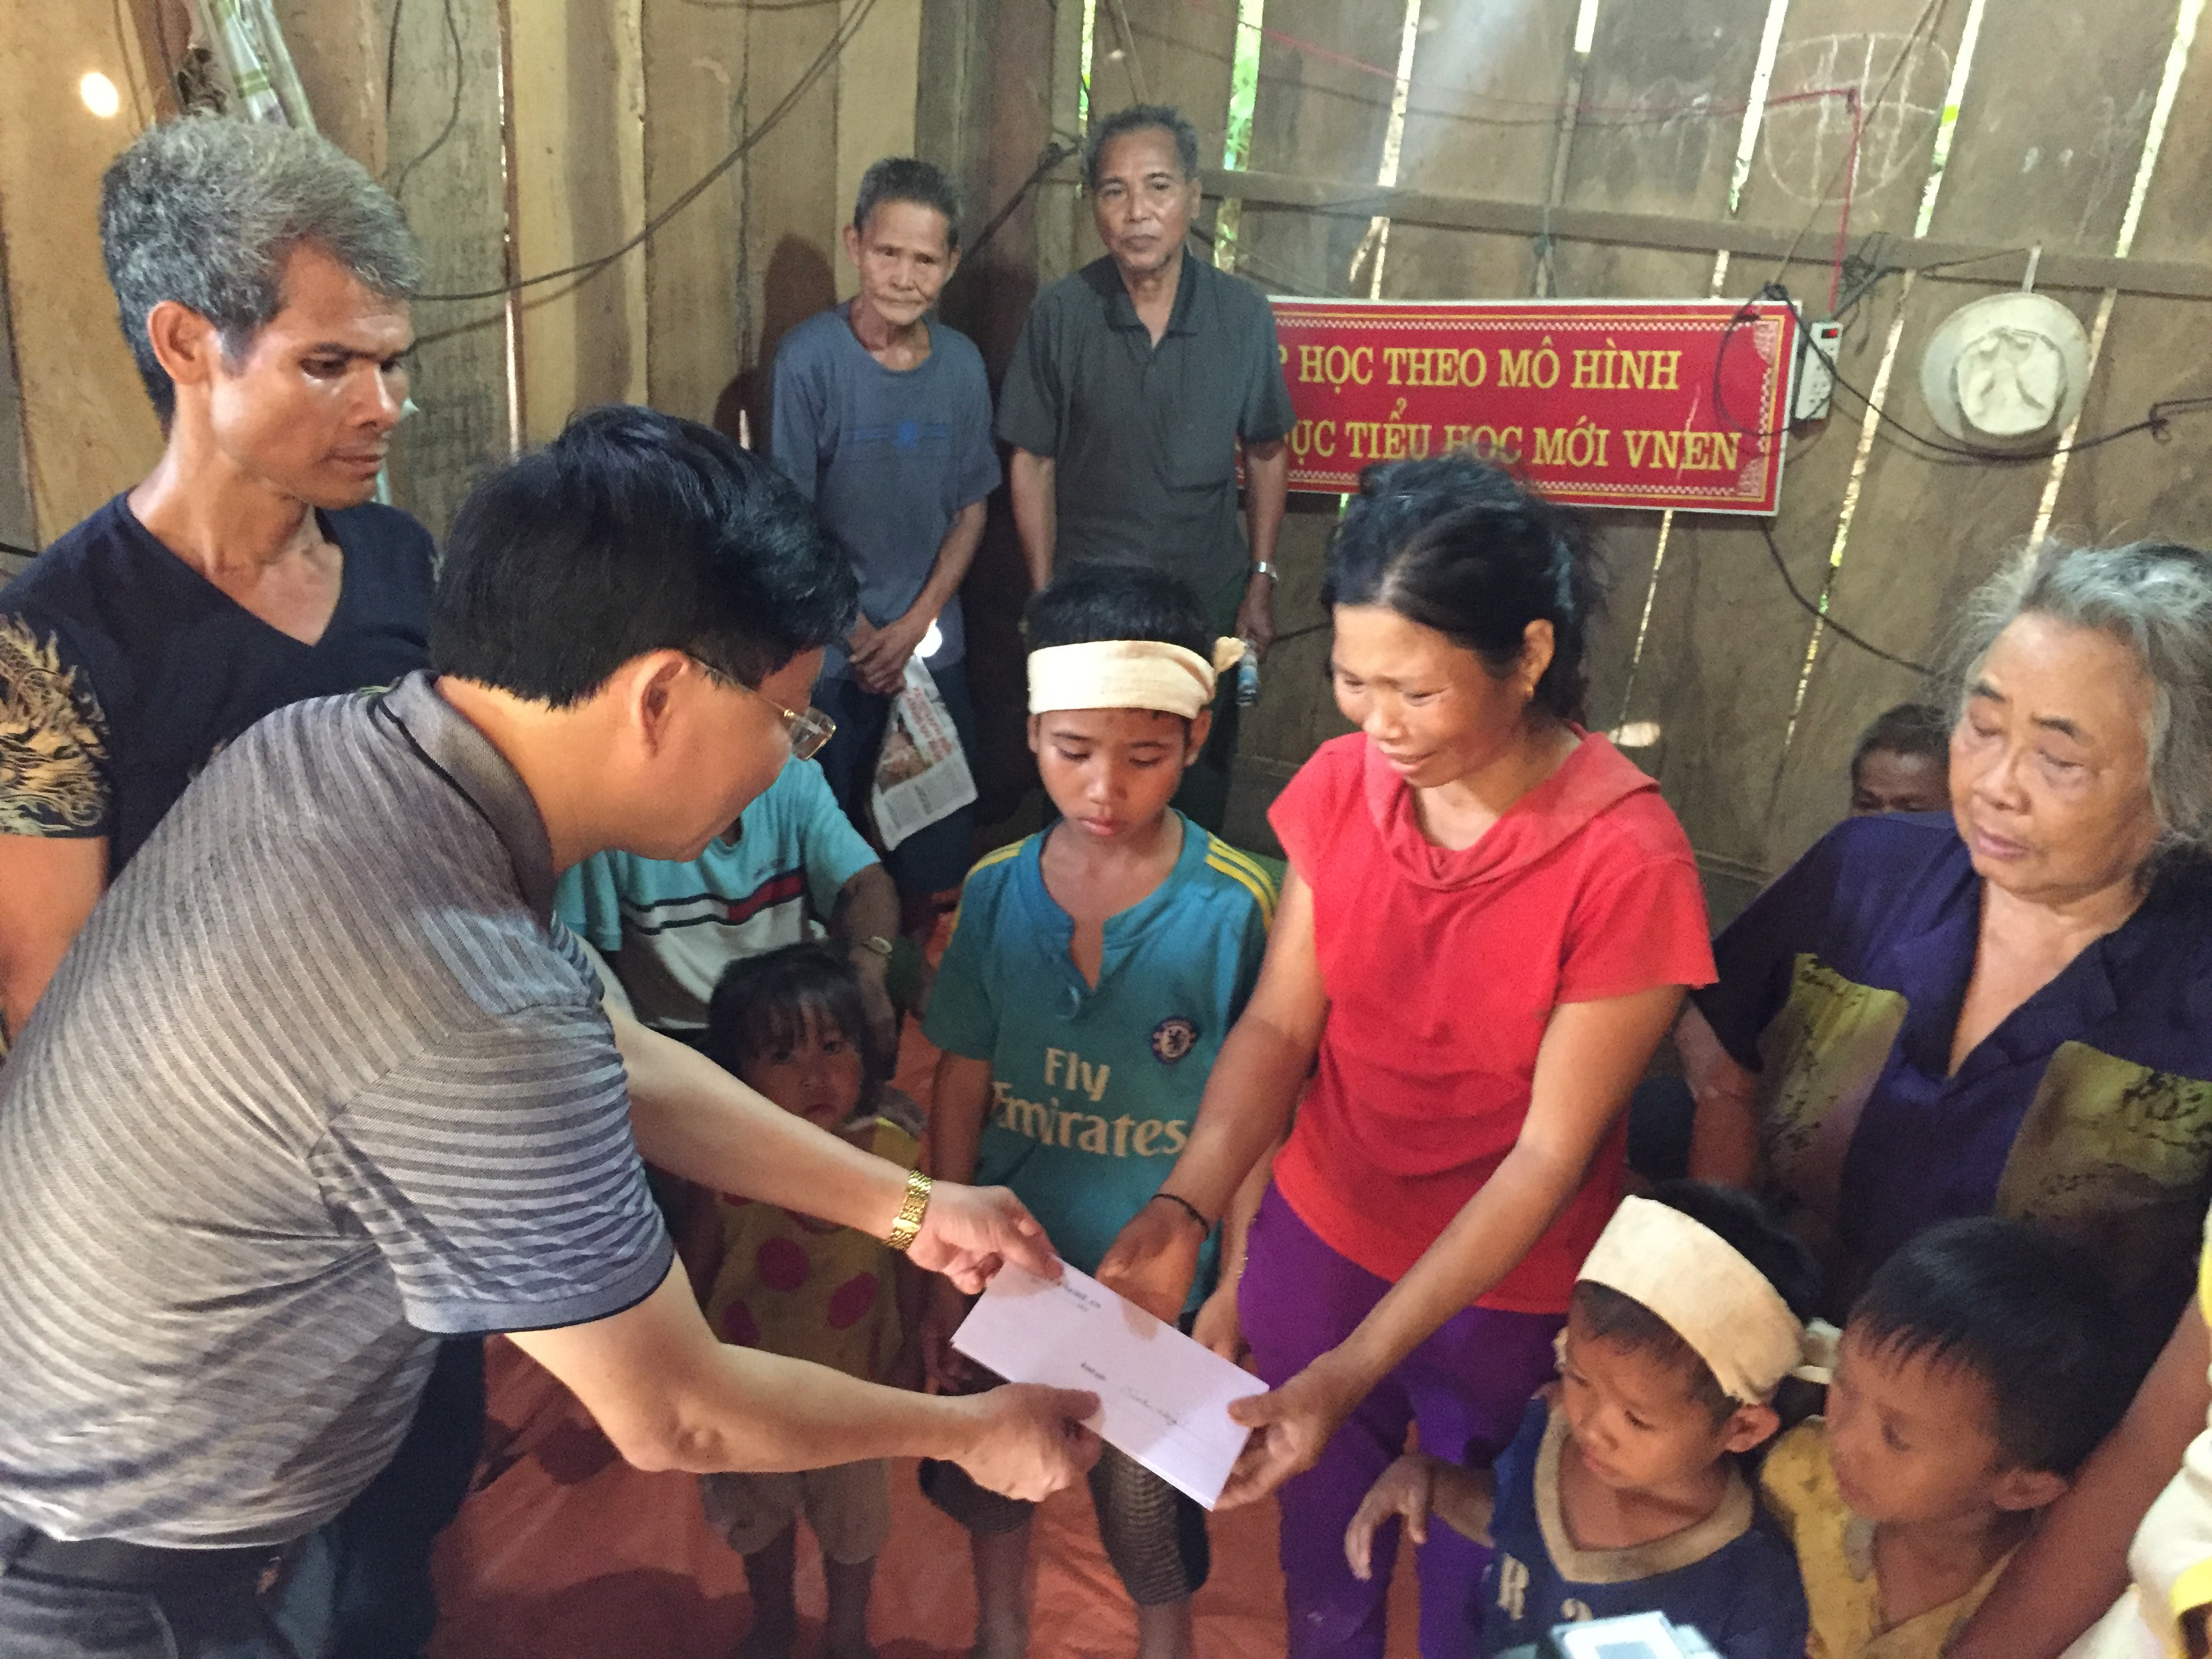 Đồng chí Nguyễn Văn Thông và đoàn công tác đến thăm hỏi, động viên các gia đình có người thân bị chết trong đọt lũ lụt, trao quà hỗ trợ mỗi gia đình 3 triệu đồng.